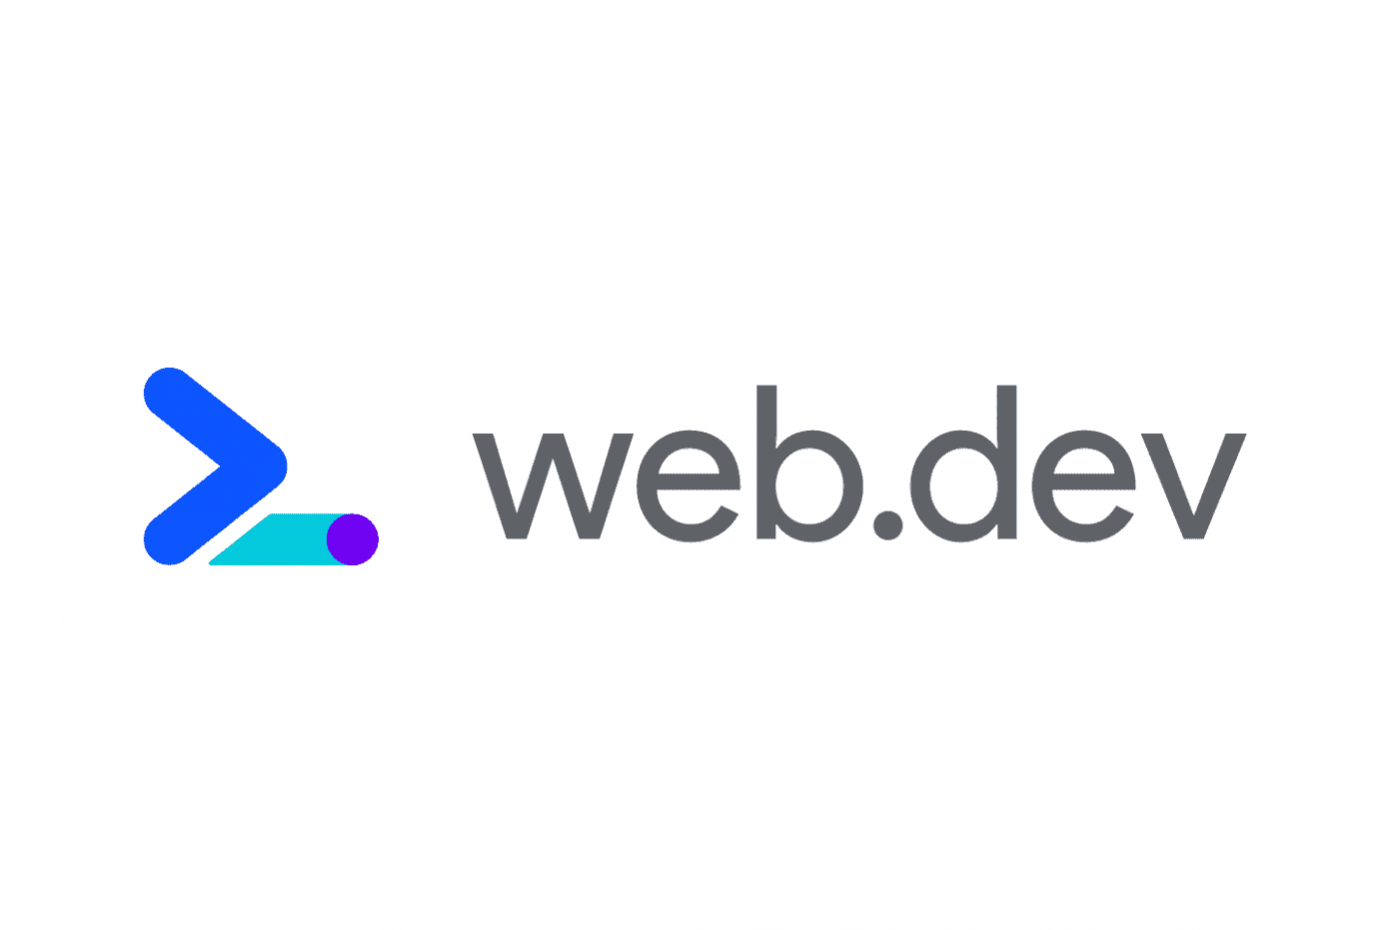 Https web tv. Веб Дева. Веб дев логотип. Логотип Devs. Web Dev Google.